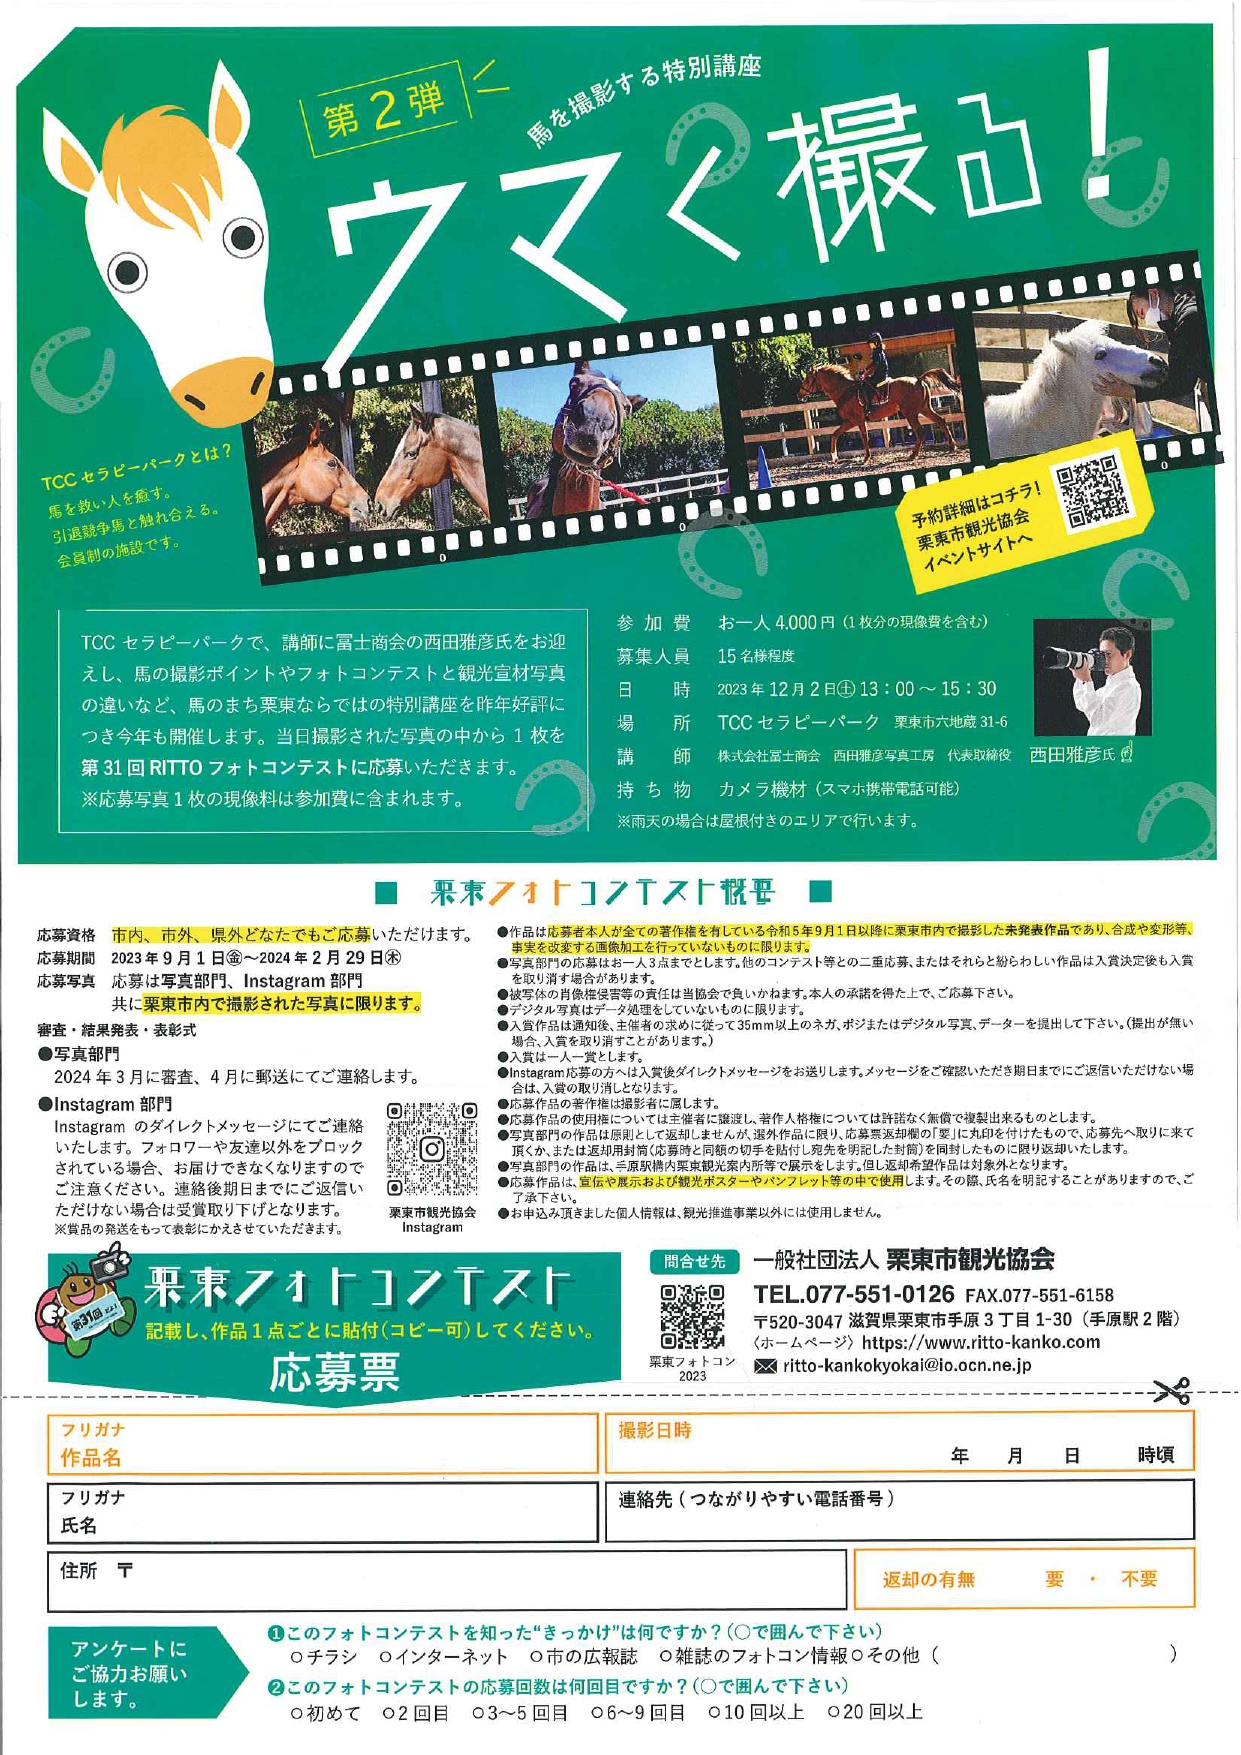 【募集!】栗東フォトコン・馬を撮影する特別講座「ウマく撮る!」第2弾!